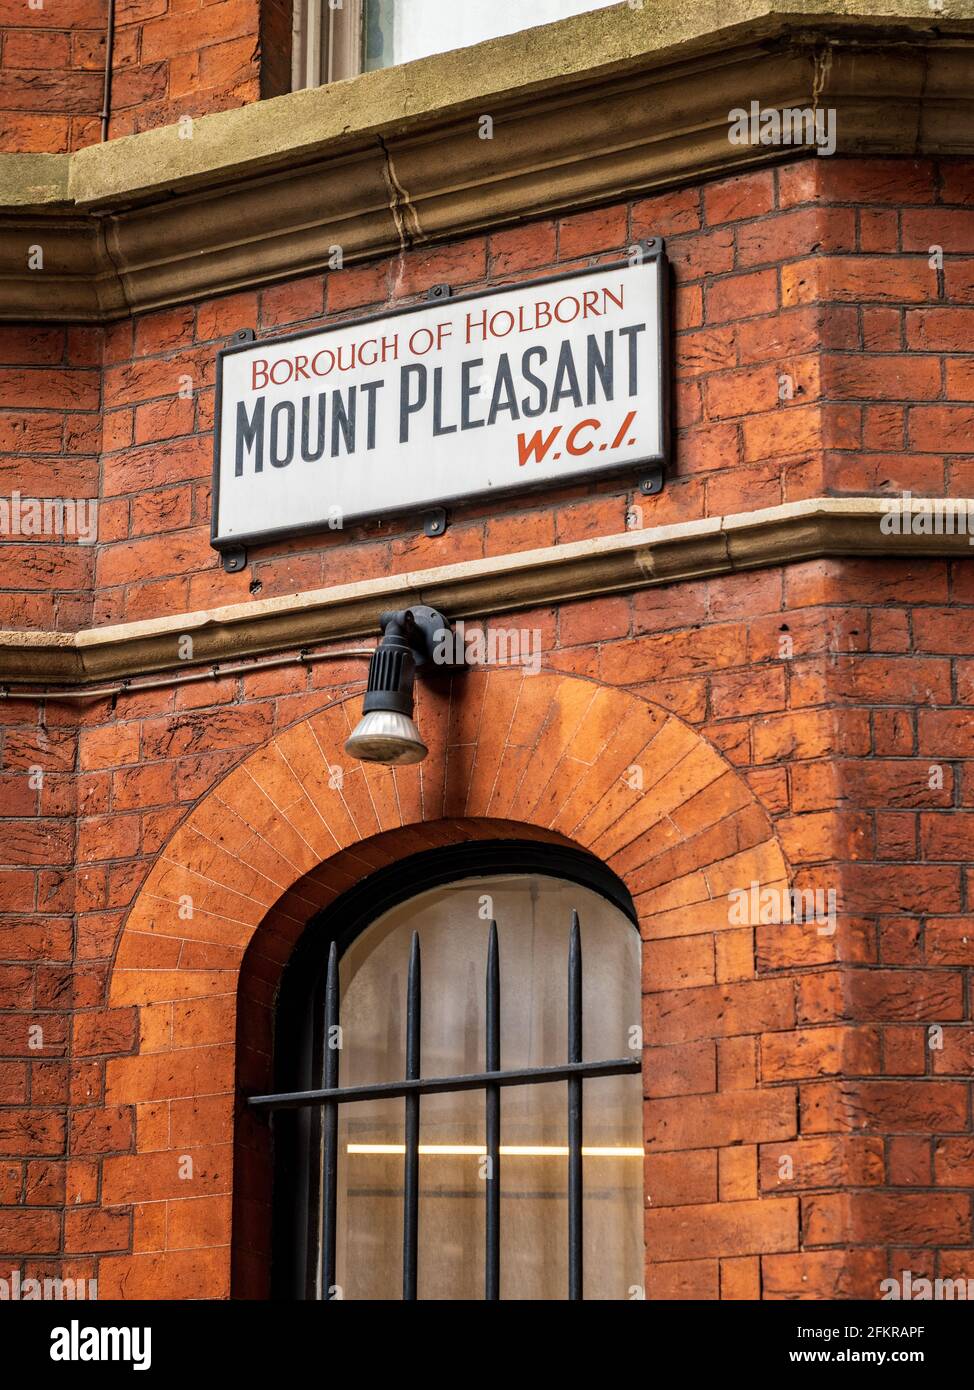 Moutn Pleasant WC1 London - altes Straßenschild für Mount Pleasant Borough of Holborn W.C 1 im Zentrum von London. Beschilderung Zur London Street. Stockfoto